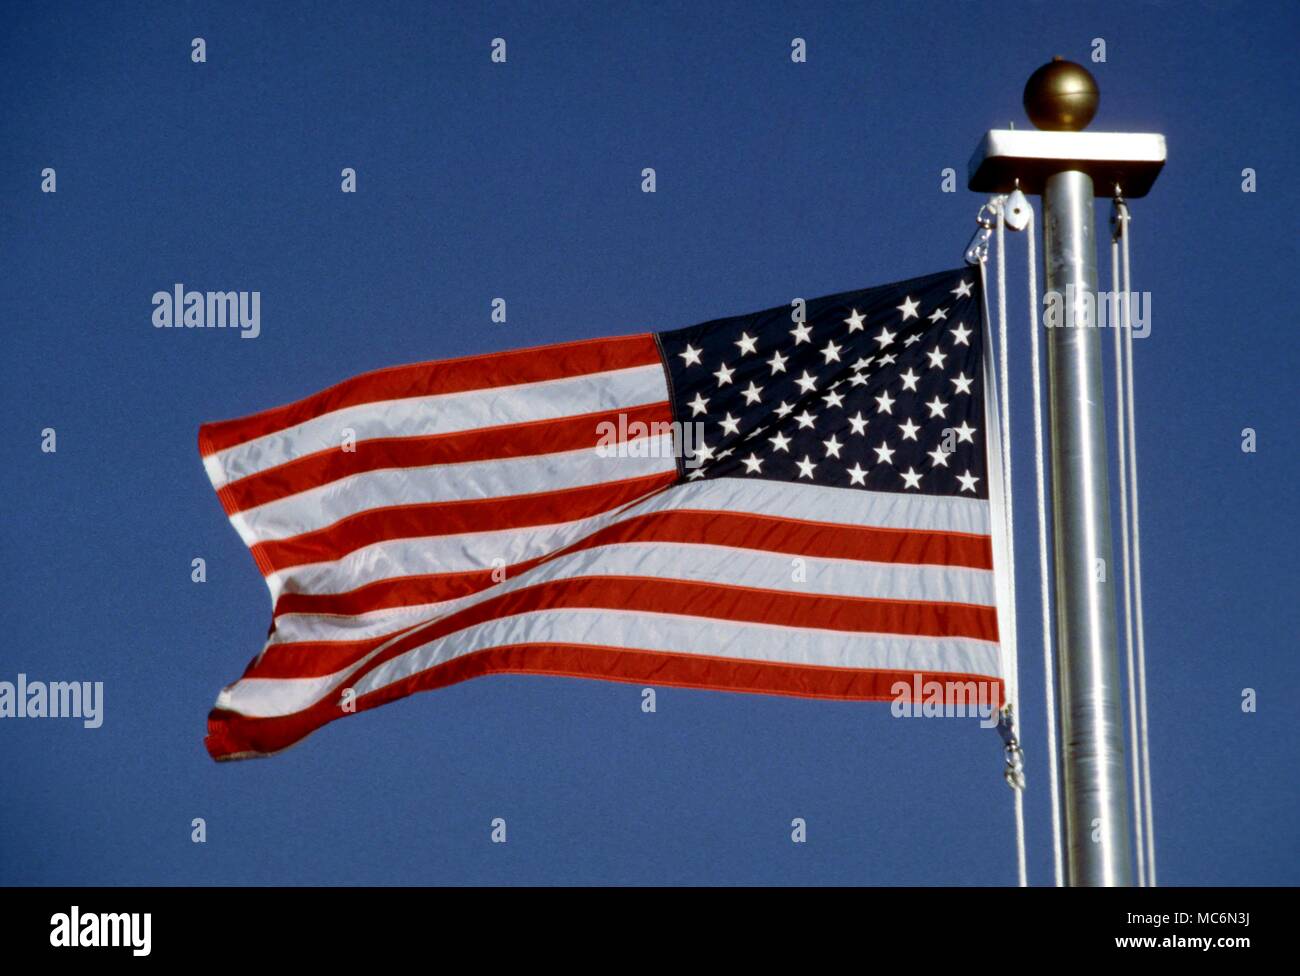 Las banderas de las barras y estrellas de los Estados Unidos. Foto de stock